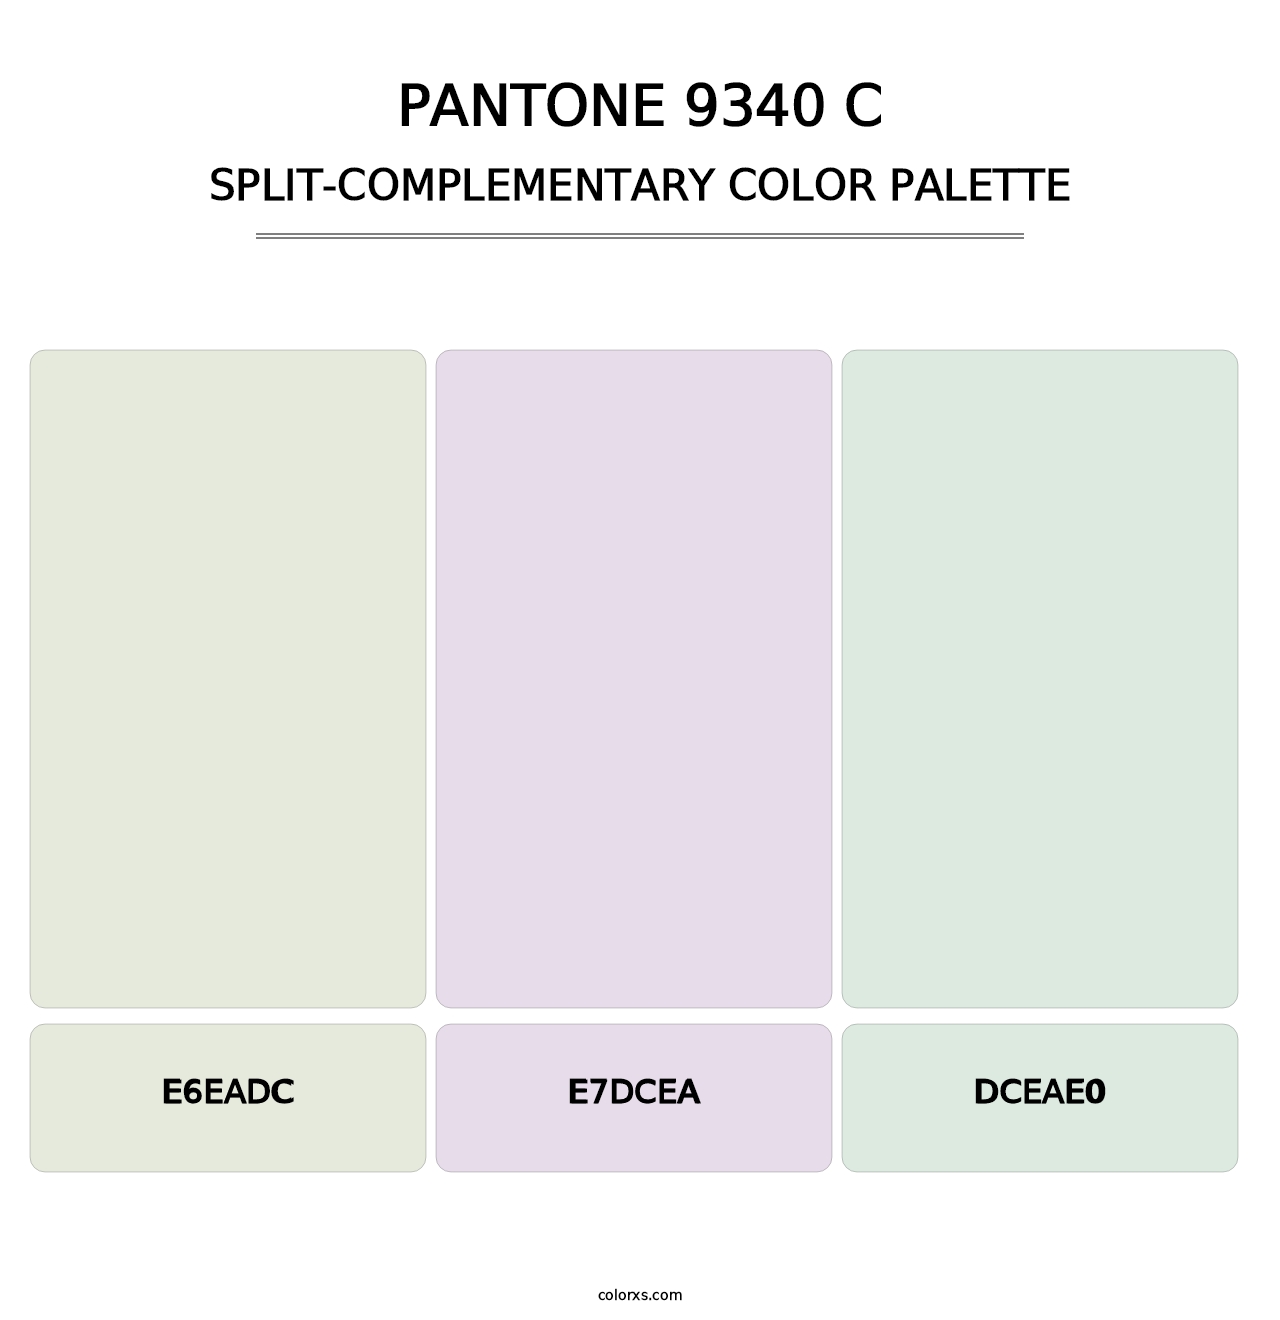 PANTONE 9340 C - Split-Complementary Color Palette